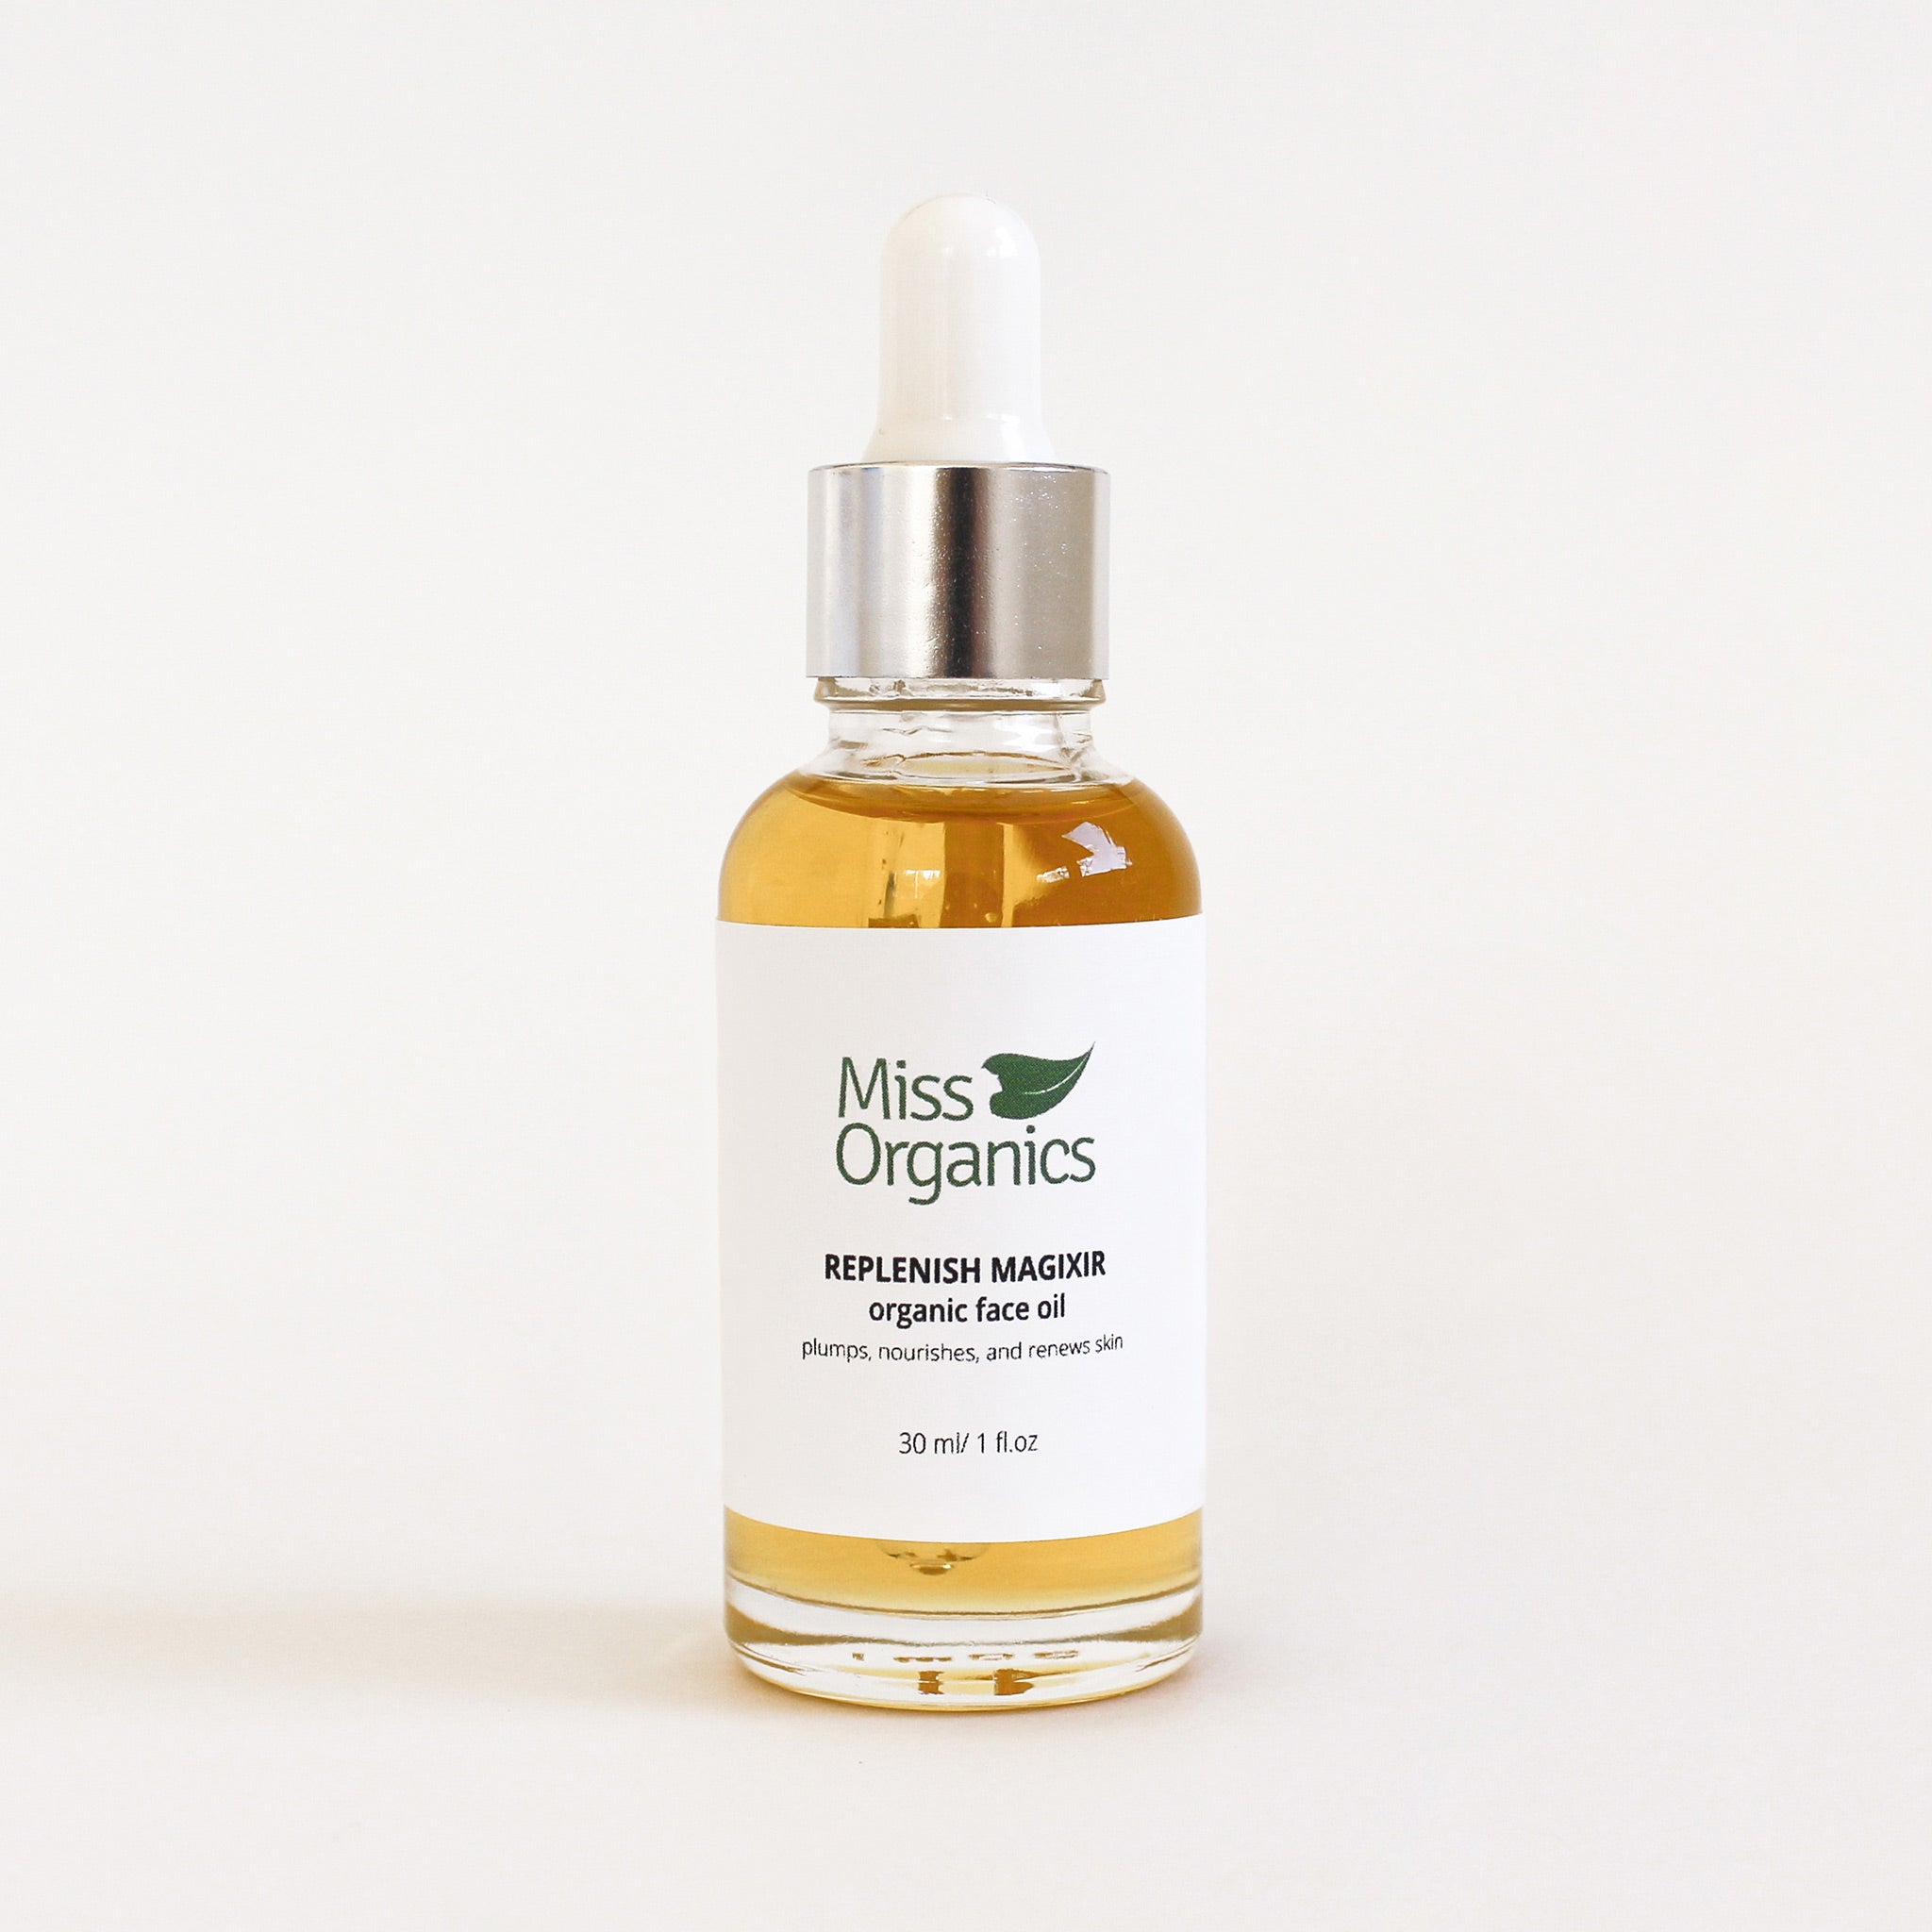 Replenish Magixir Organic Face Oil in glass bottle on plain  cream background